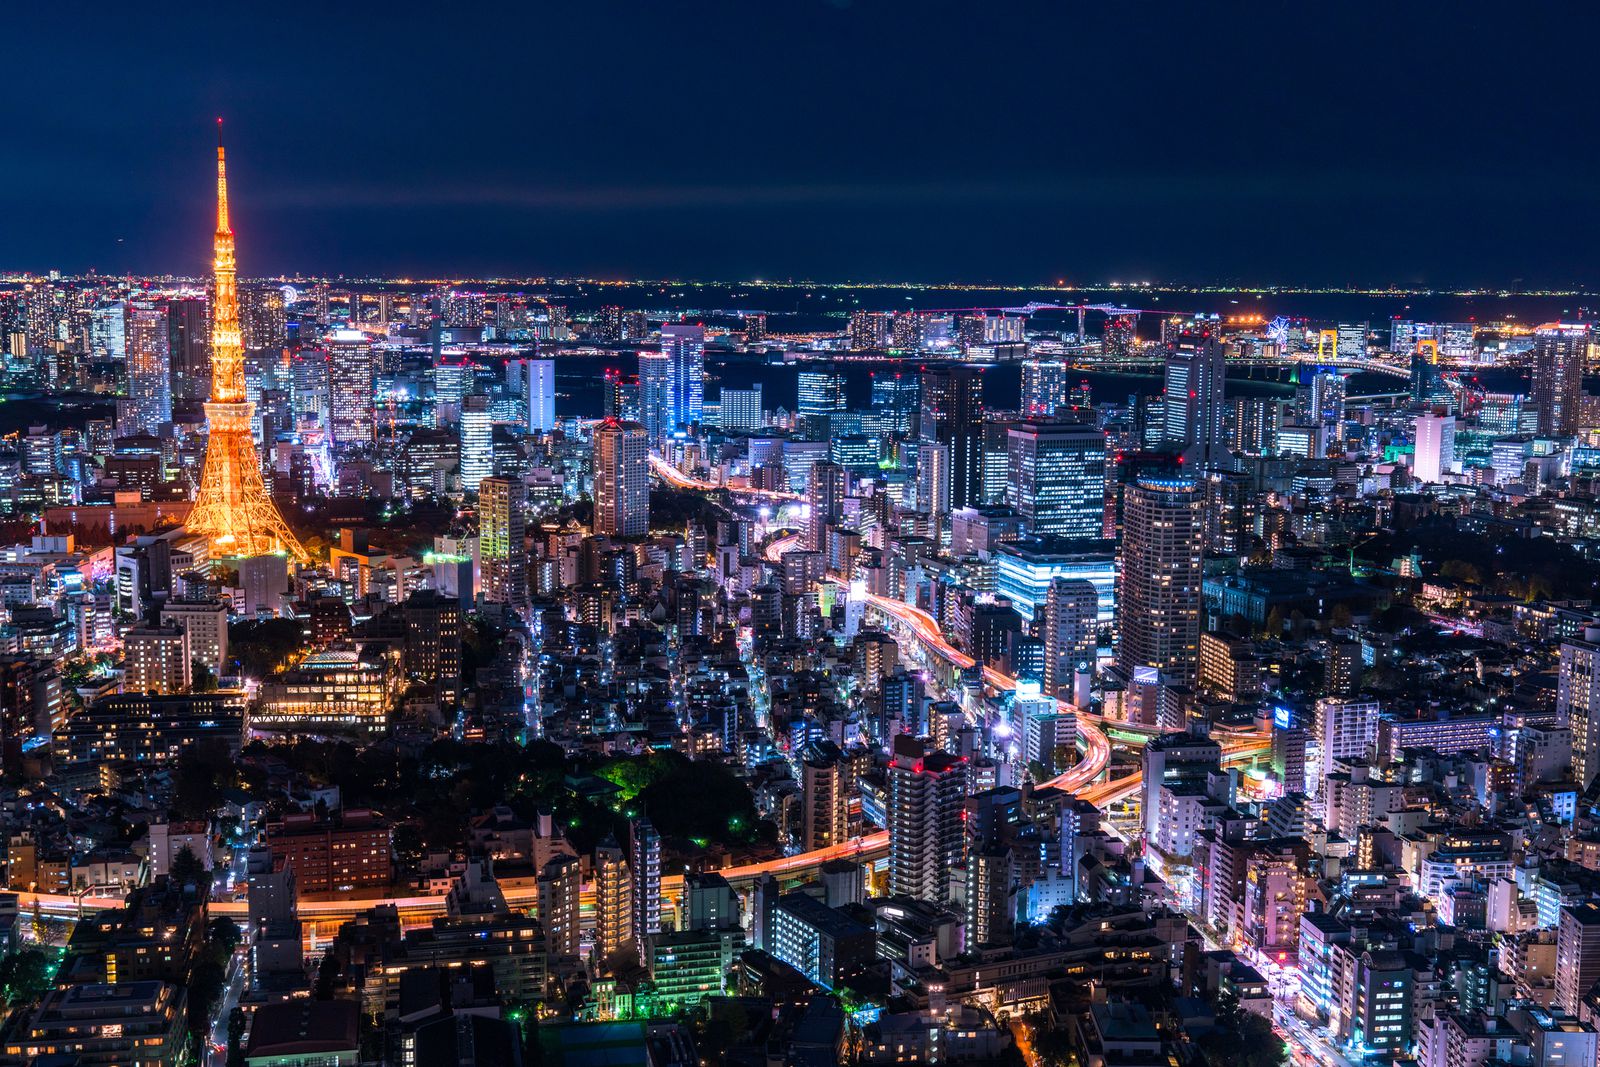 メイン画像 夏は夜景でロマンチックに 東京都内のおすすめ夜景スポット14選をご紹介 Retrip リトリップ